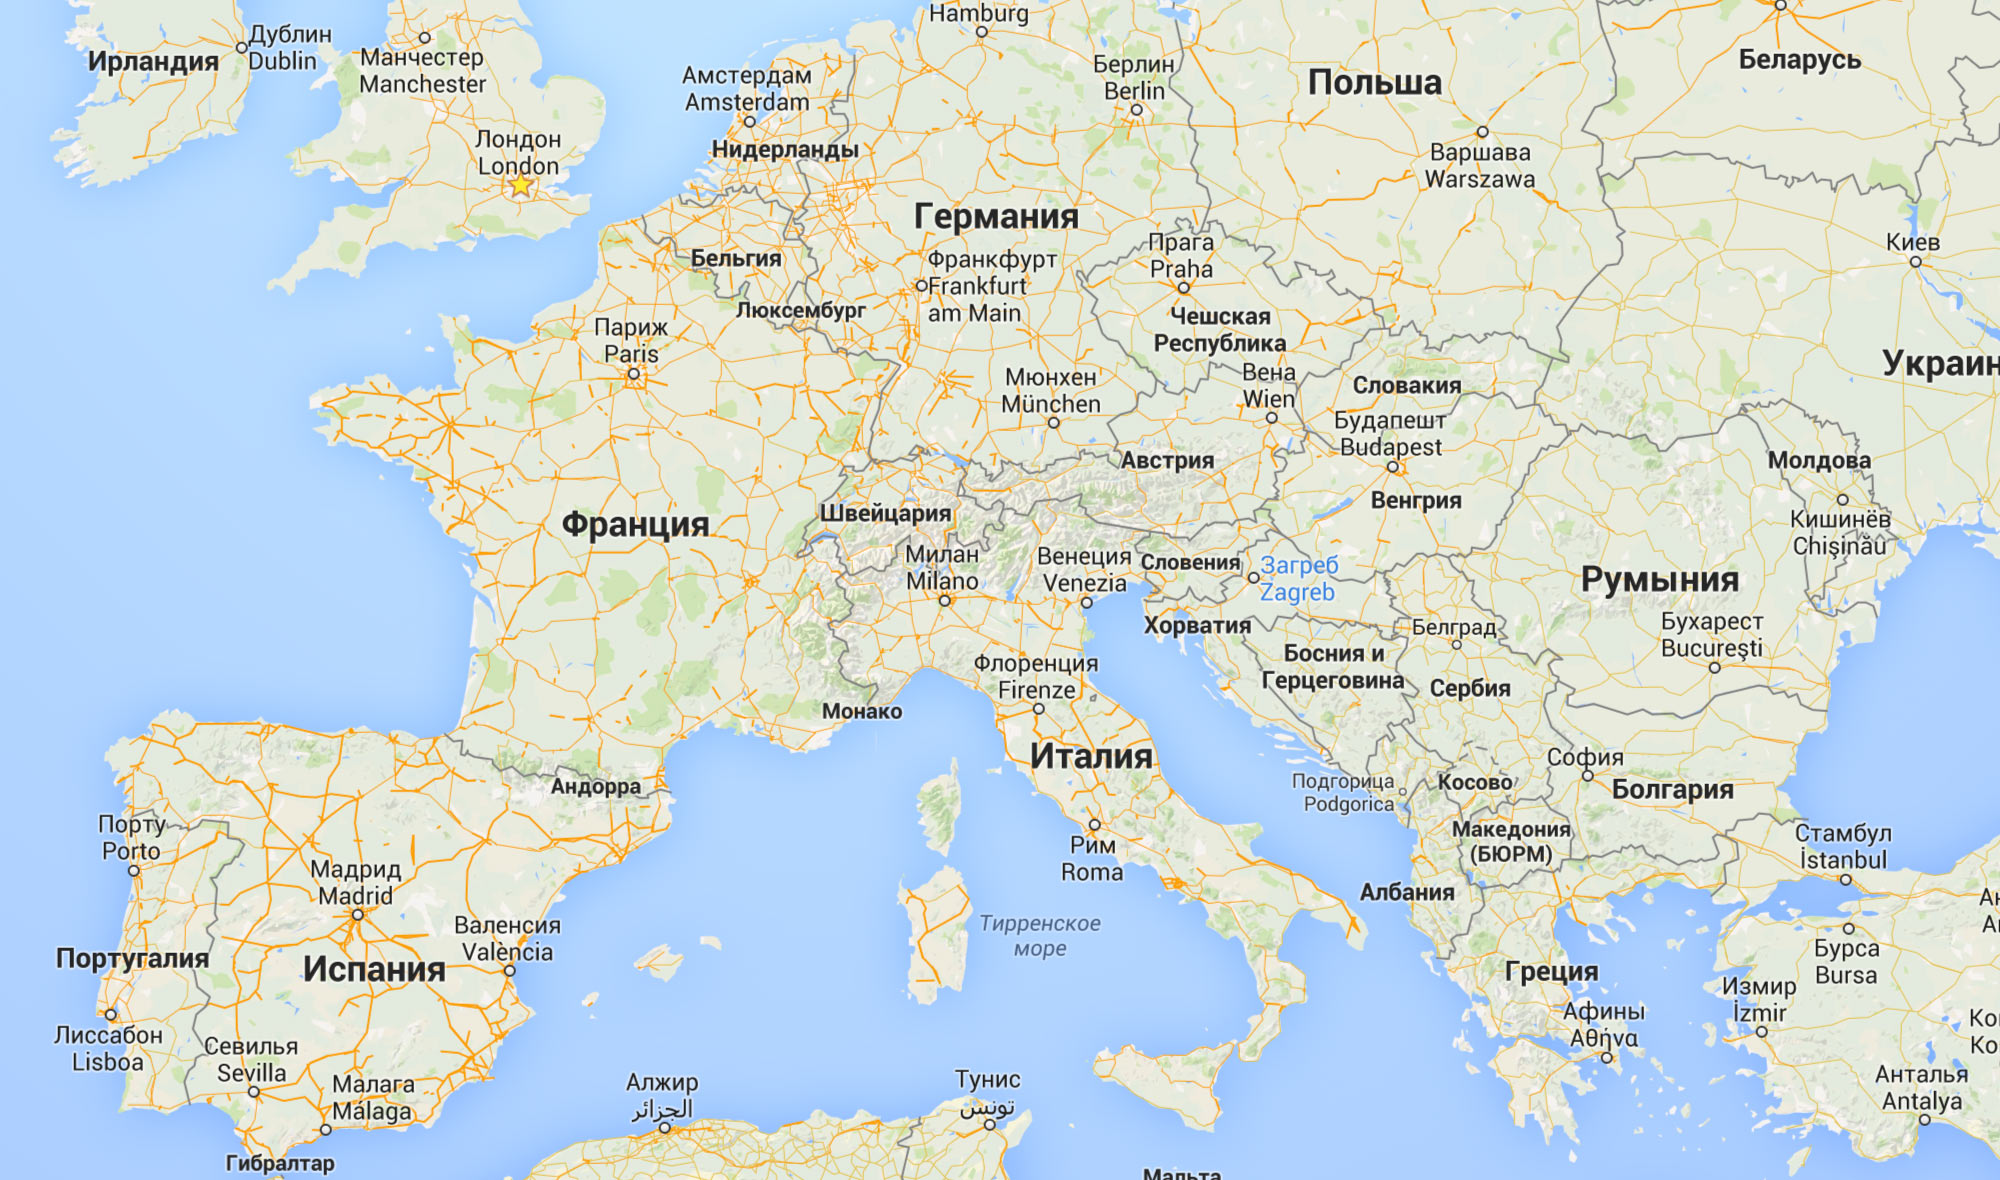 Координаты столиц всех стран европы